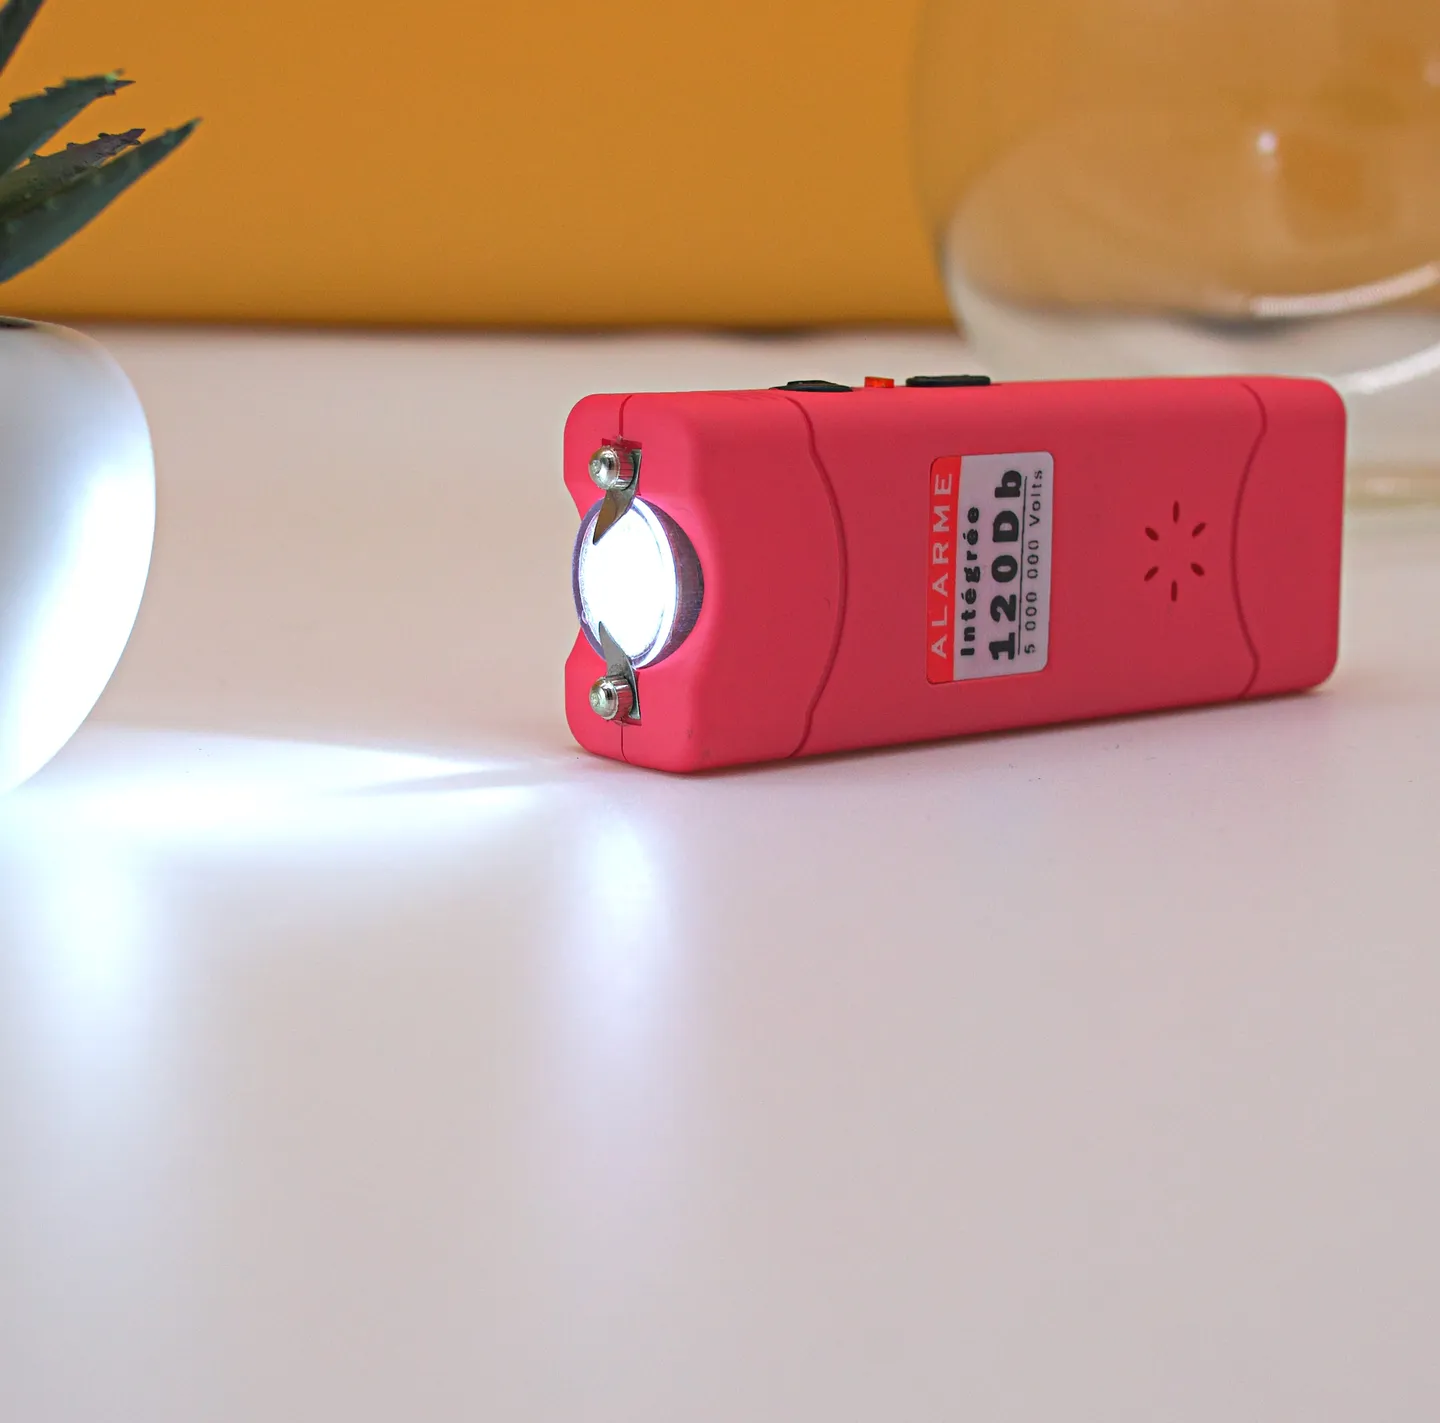 Elektroschocker & Taser - Der rosa Taschenschreck mit integriertem Alarm